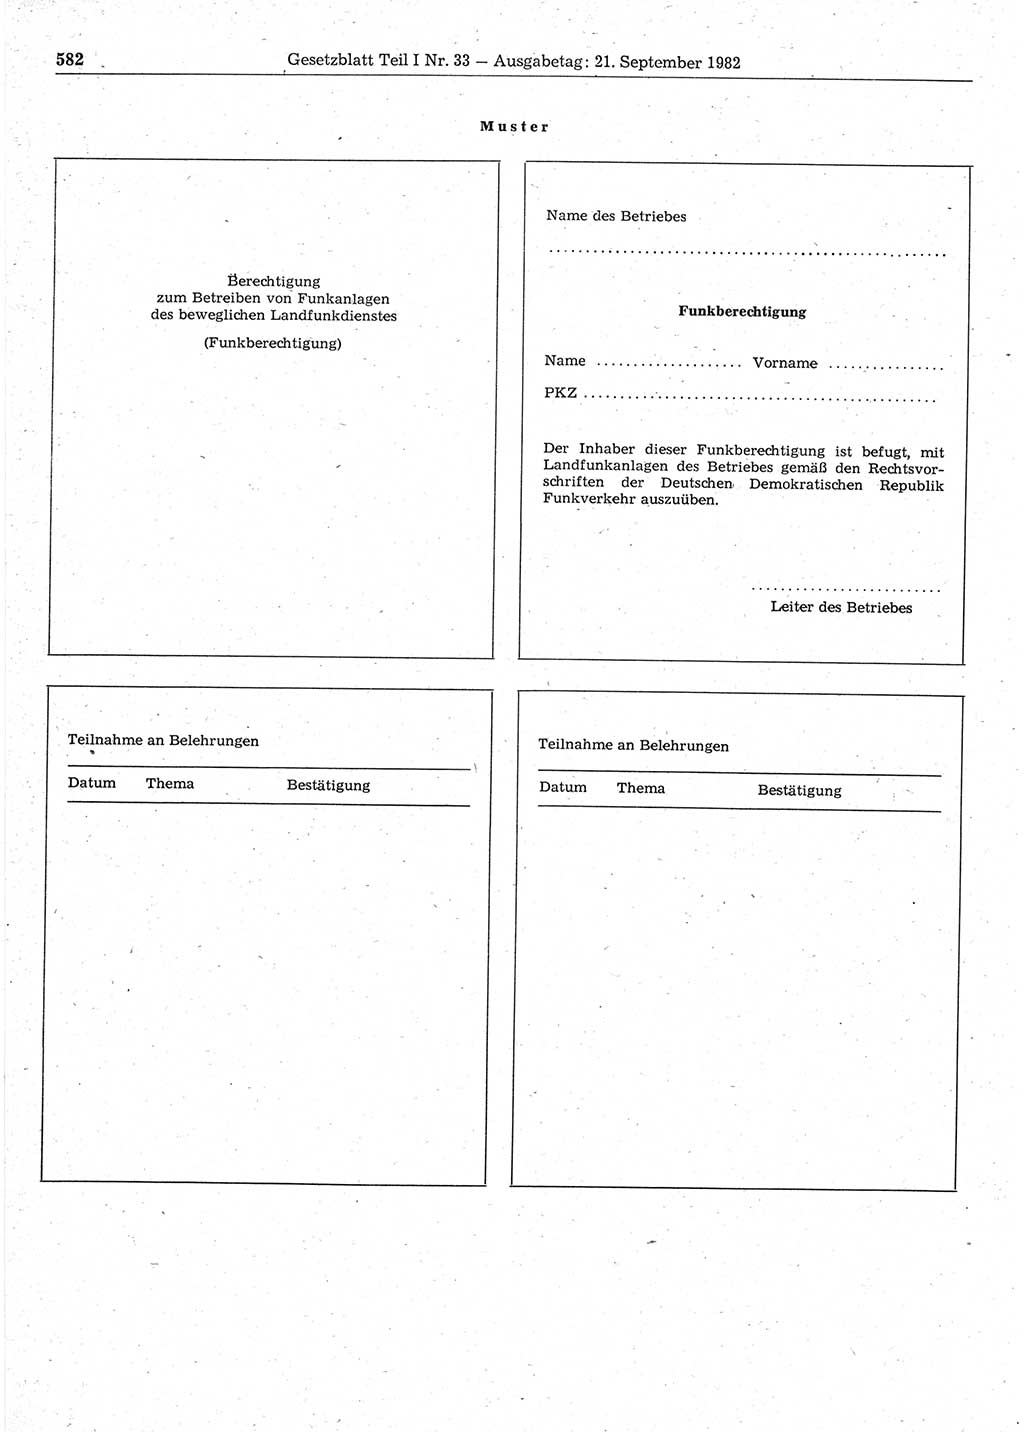 Gesetzblatt (GBl.) der Deutschen Demokratischen Republik (DDR) Teil Ⅰ 1982, Seite 582 (GBl. DDR Ⅰ 1982, S. 582)